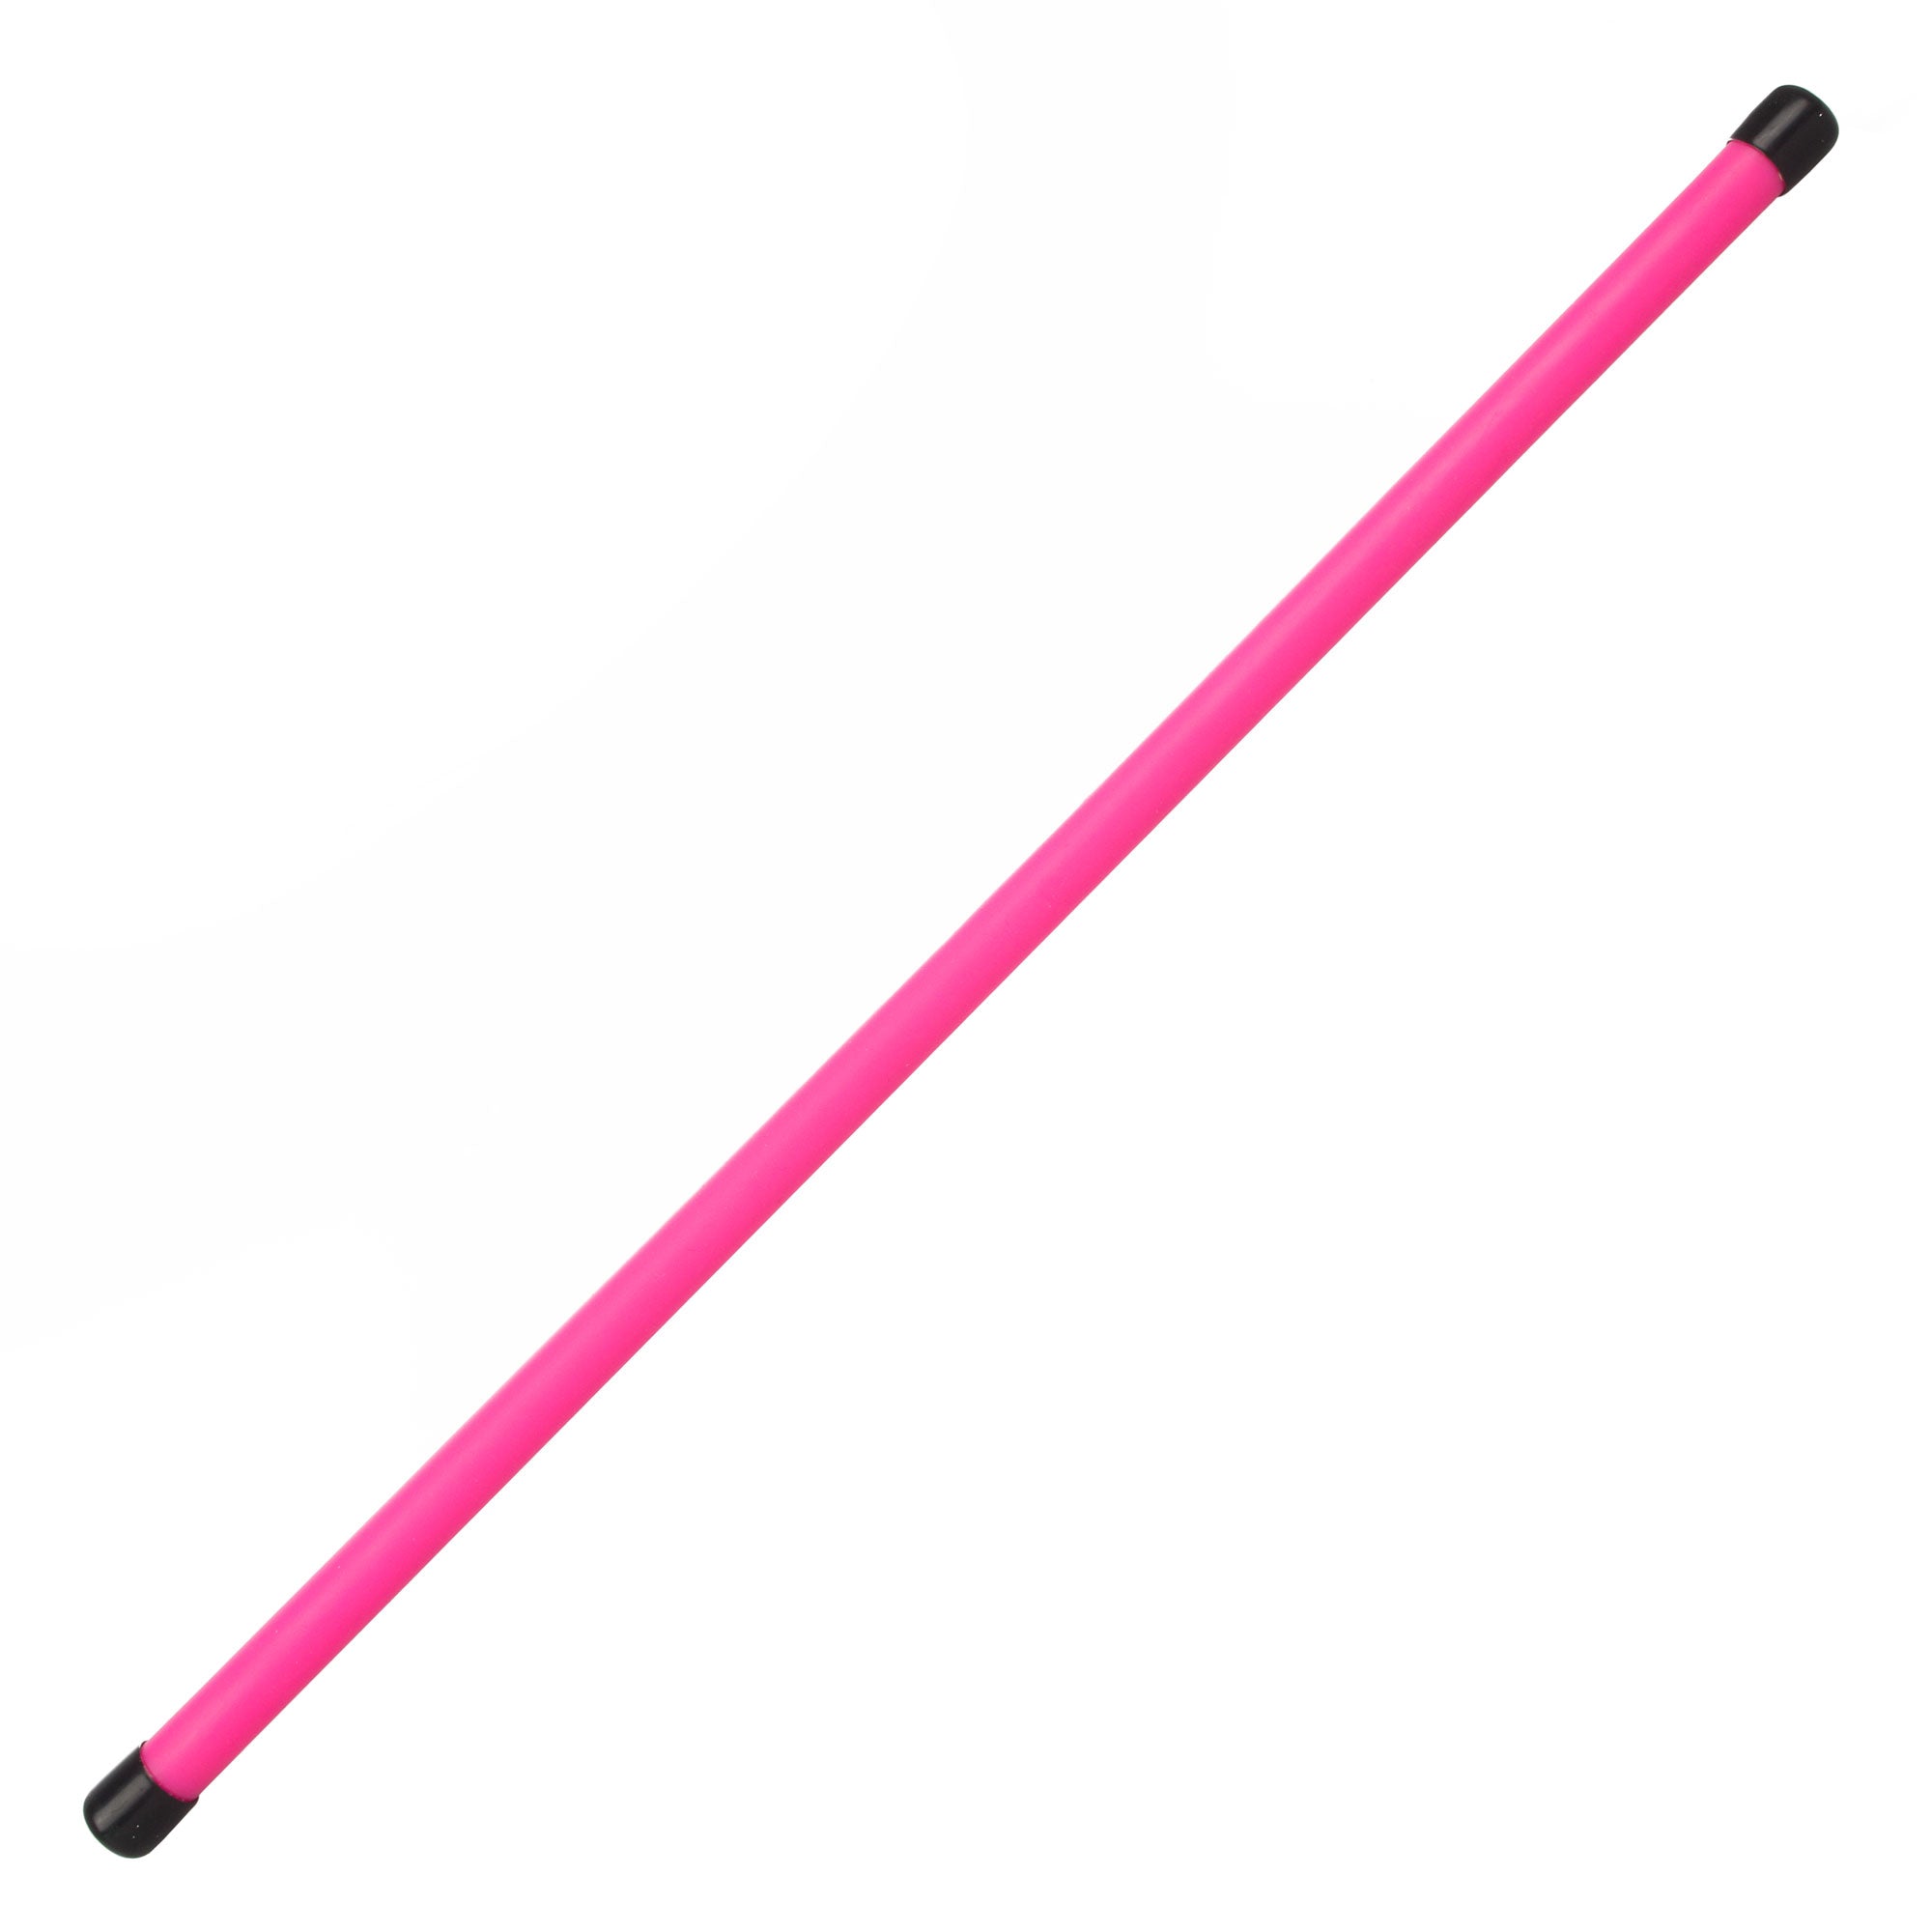 A UV pink devilstick handstick with black caps on each end